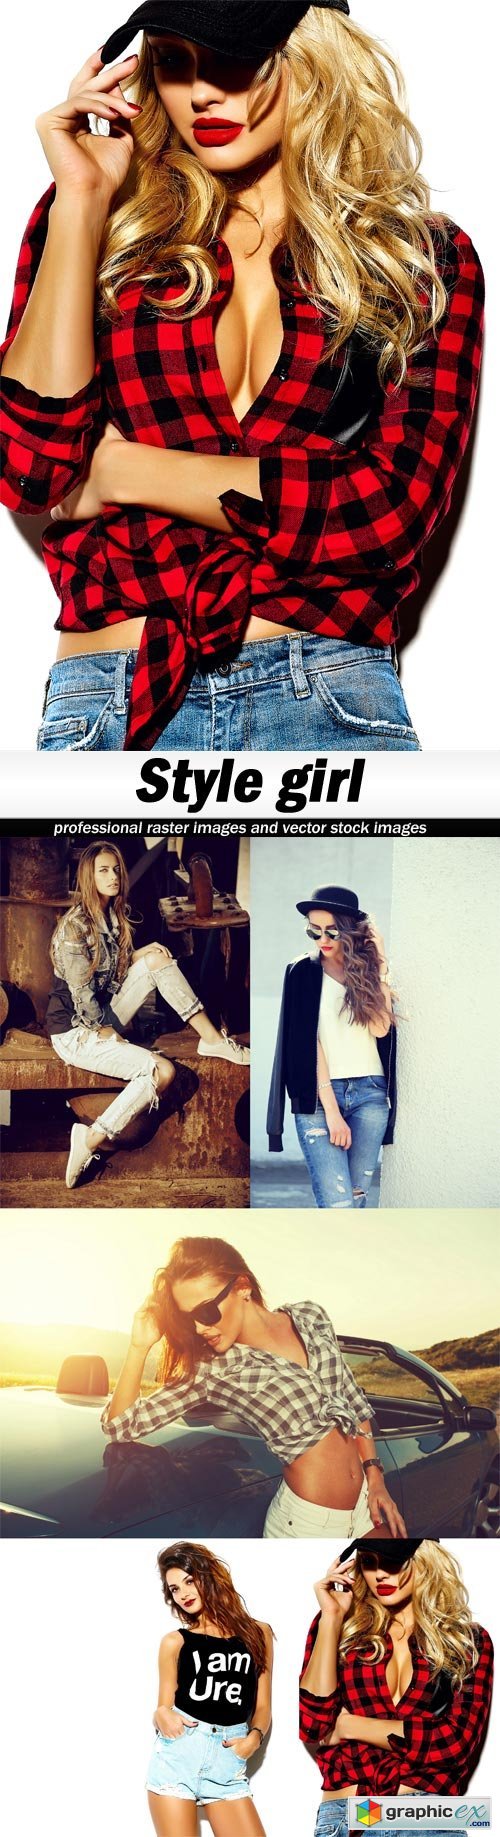 Style girl